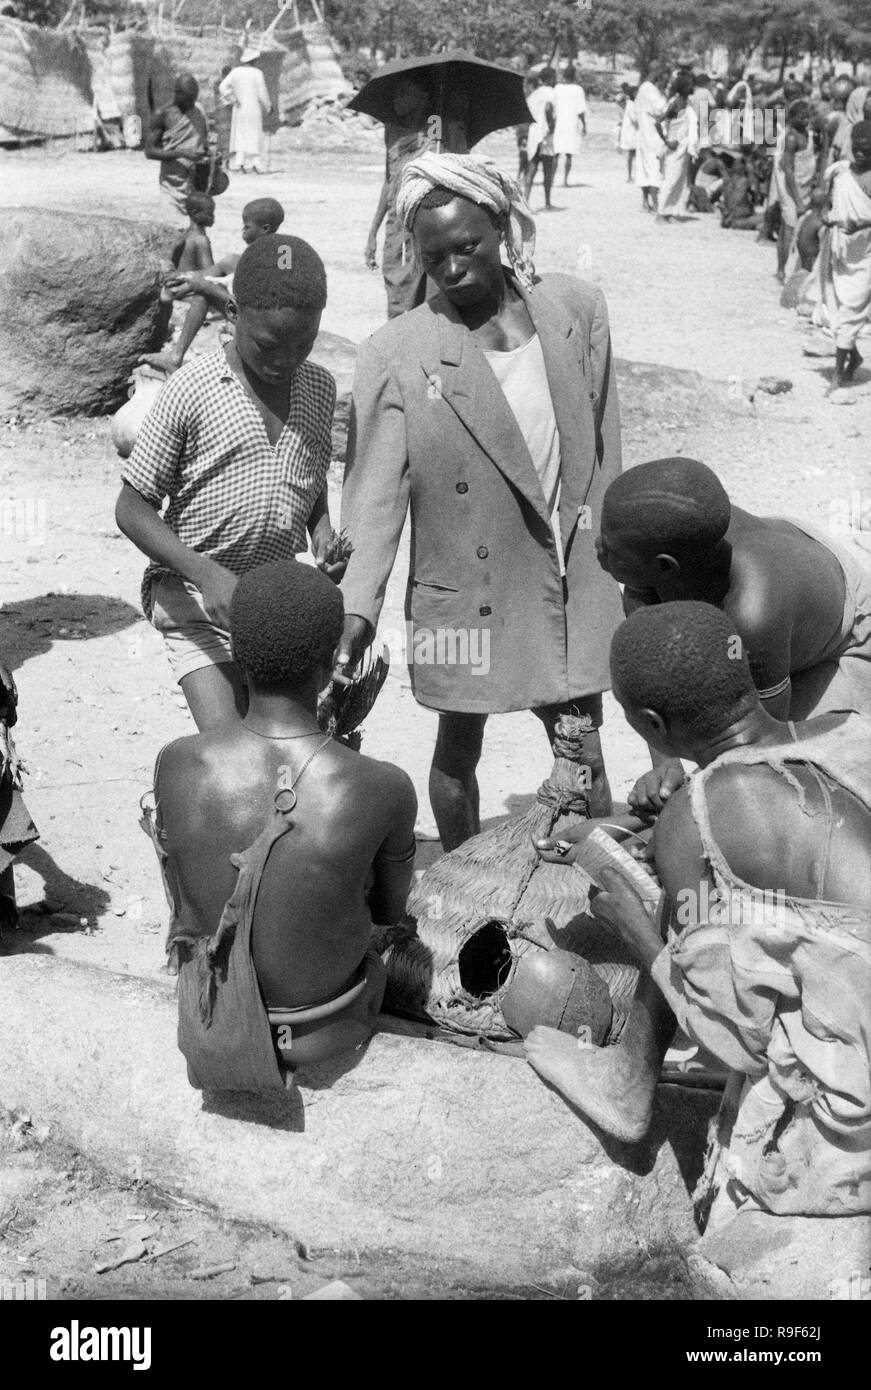 Homme africain portant un blouson à l'Ouest Cameroun street market 1959 Autochtones, l'Afrique de l'Ouest Banque D'Images